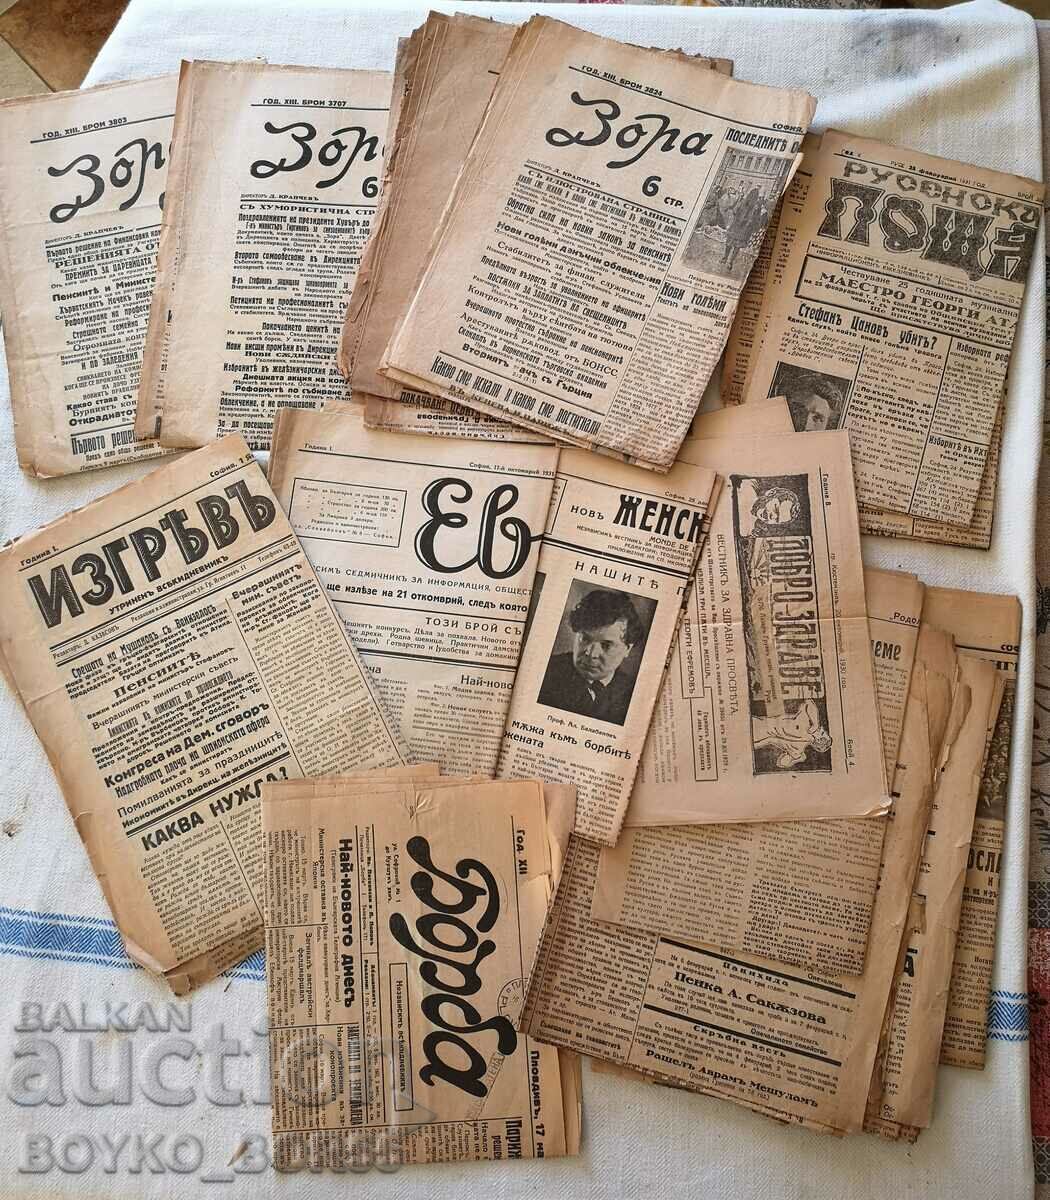 Βασιλικές εφημερίδες από τη δεκαετία του 1930